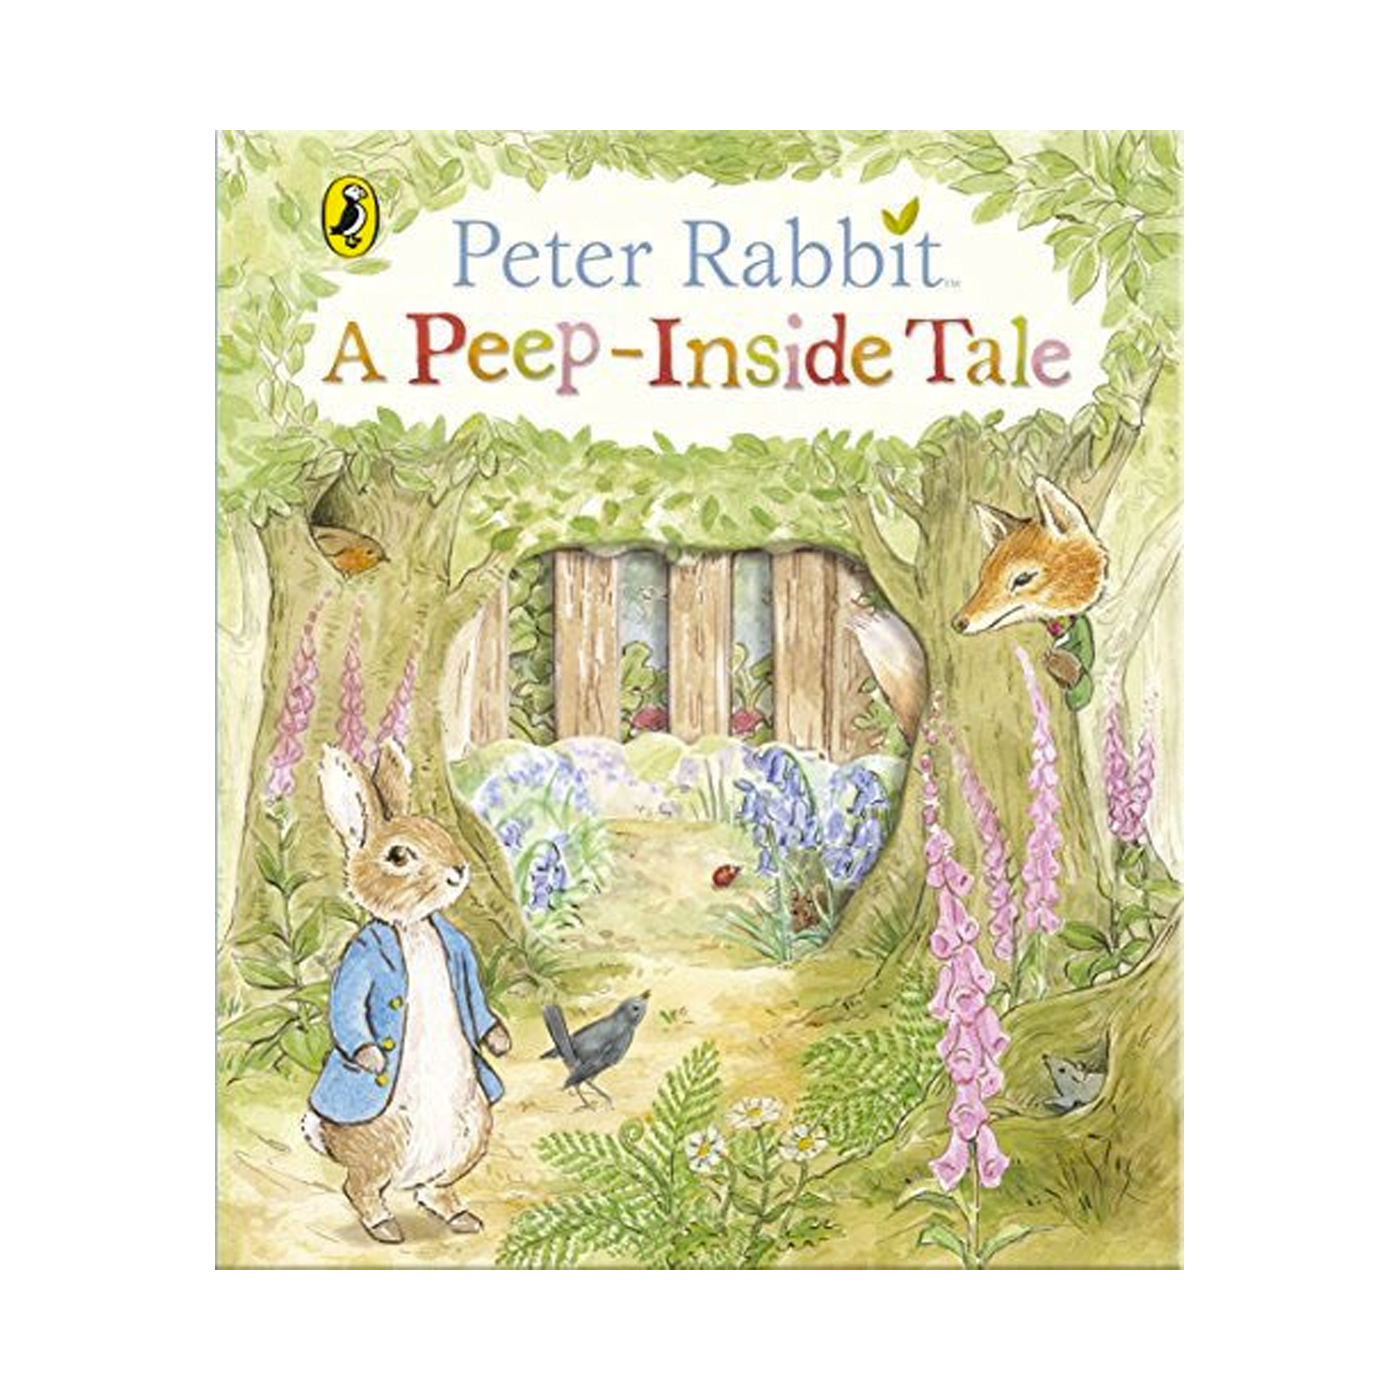  Peter Rabbit: A Peep Inside Tale